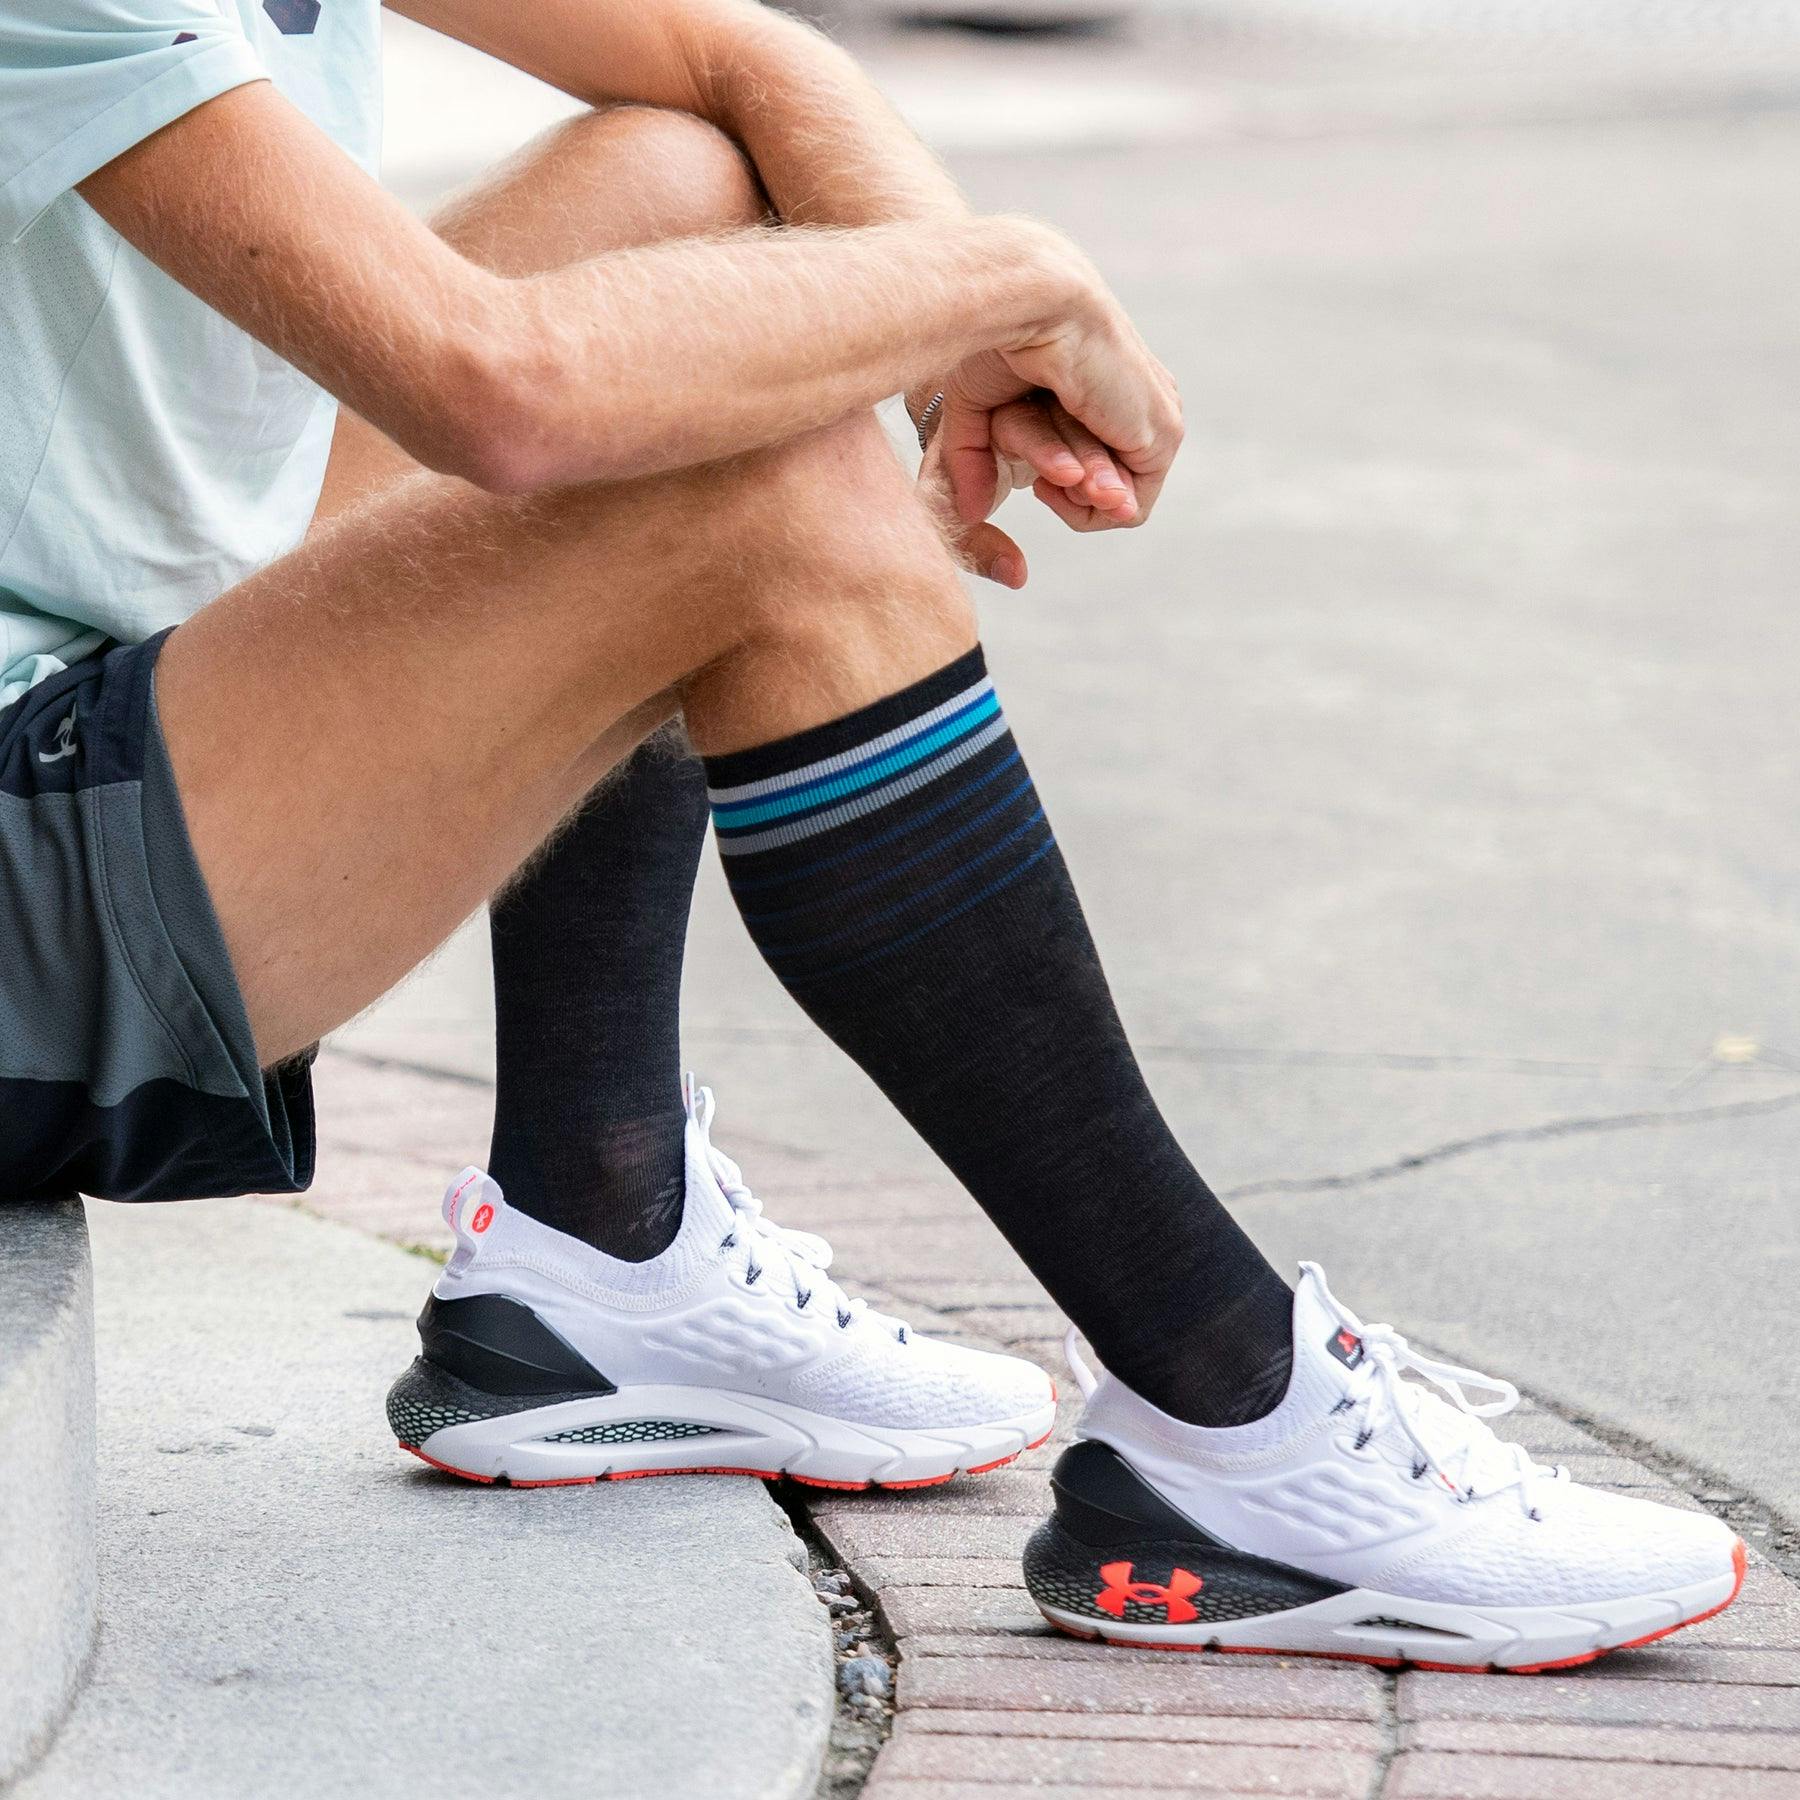 Darn Tough Men's Stride Over-the-Calf Ultra-Lightweight Sock